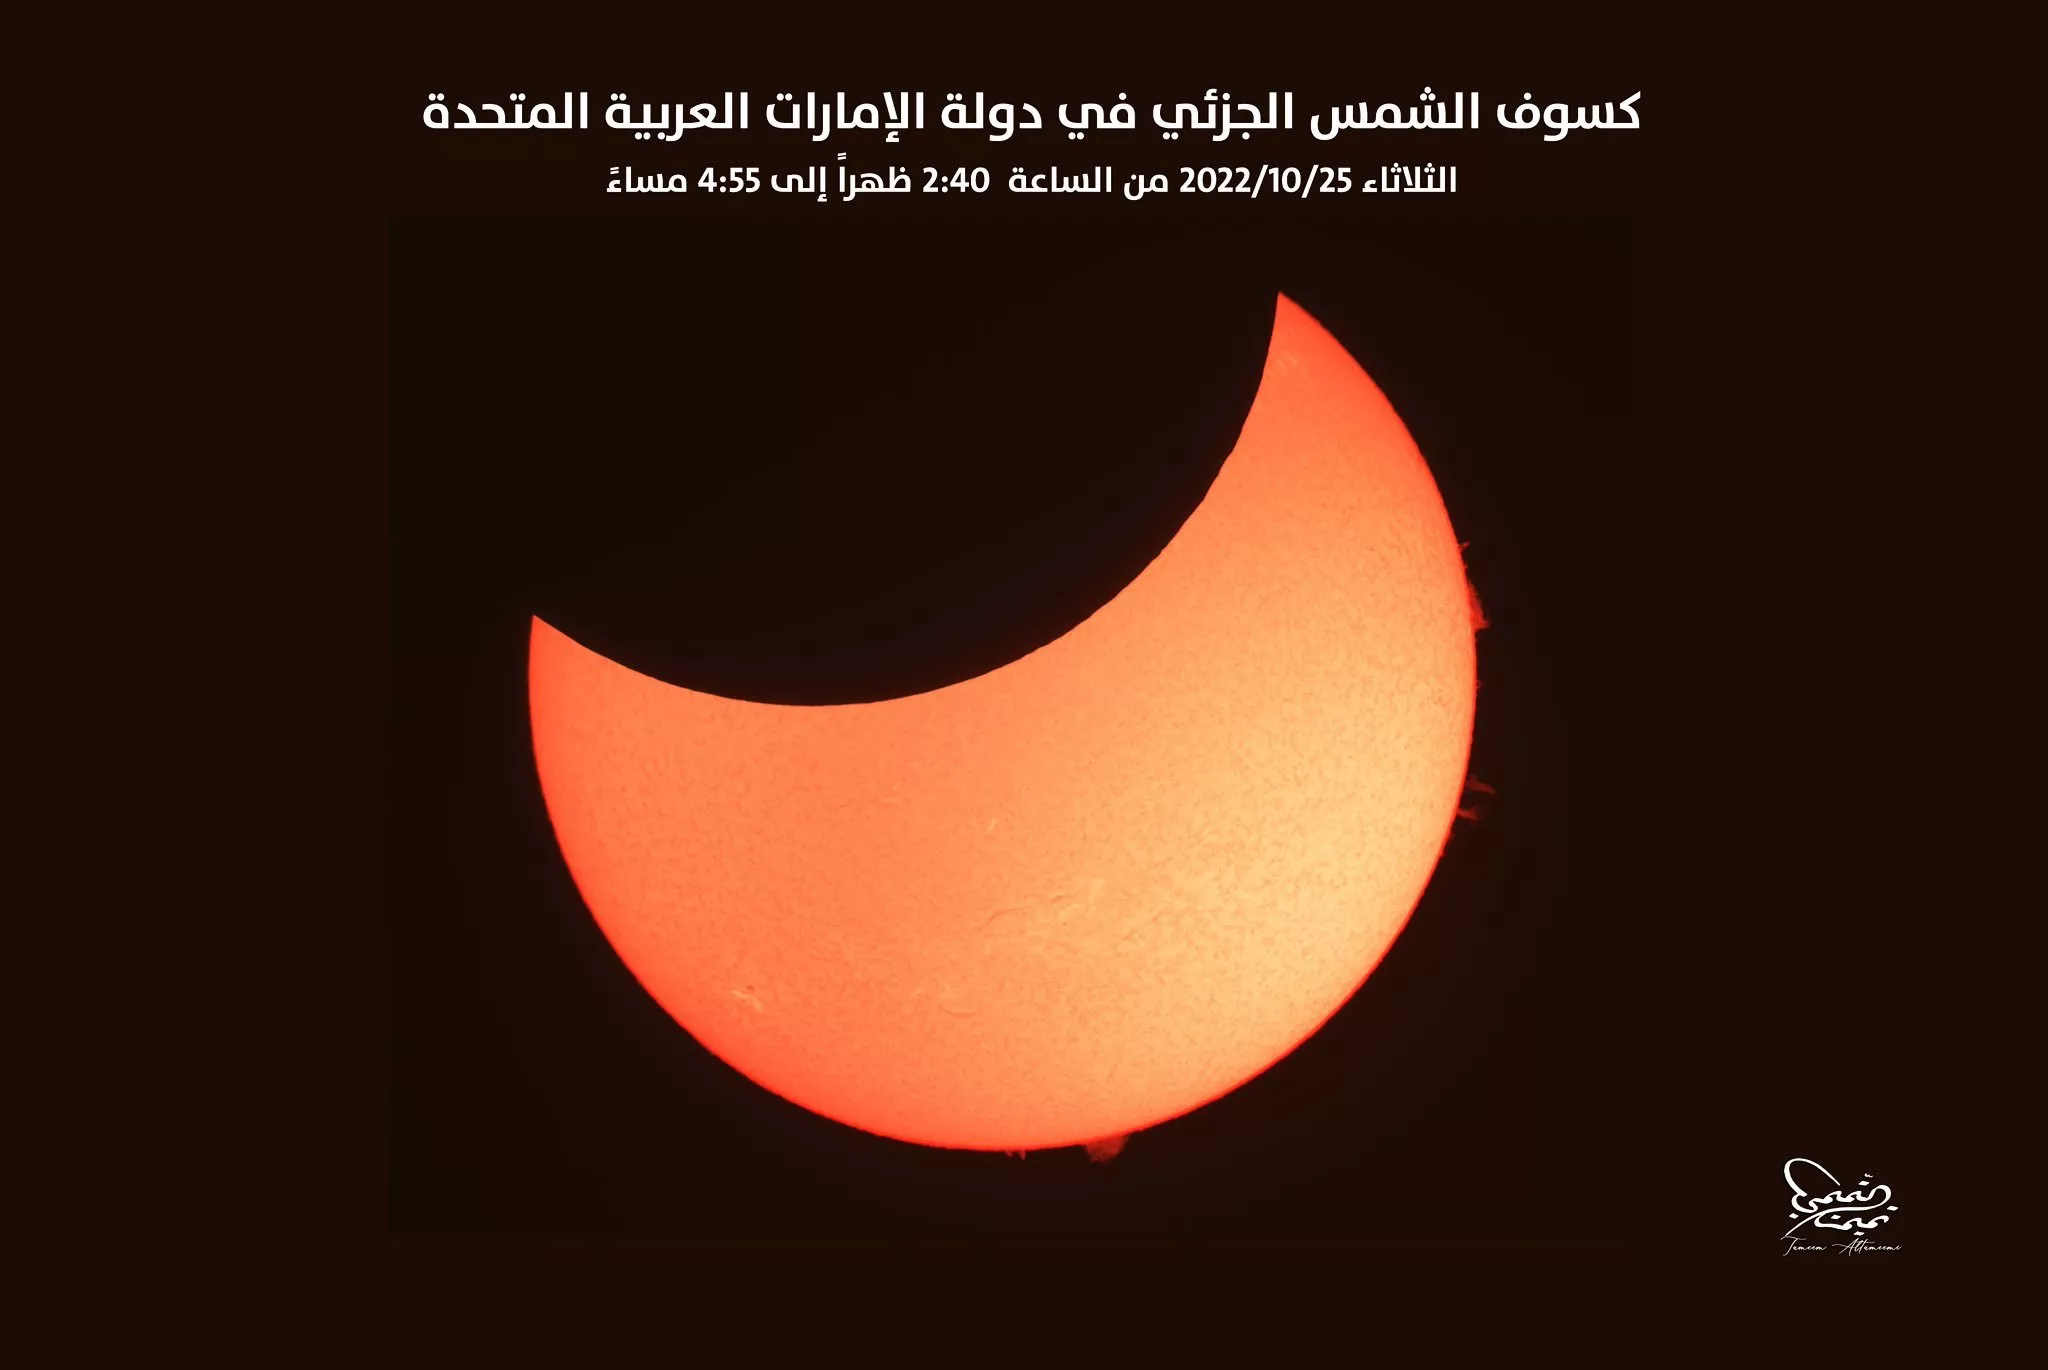 أجمل صور كسوف الشمس في مختلف الدول العربية